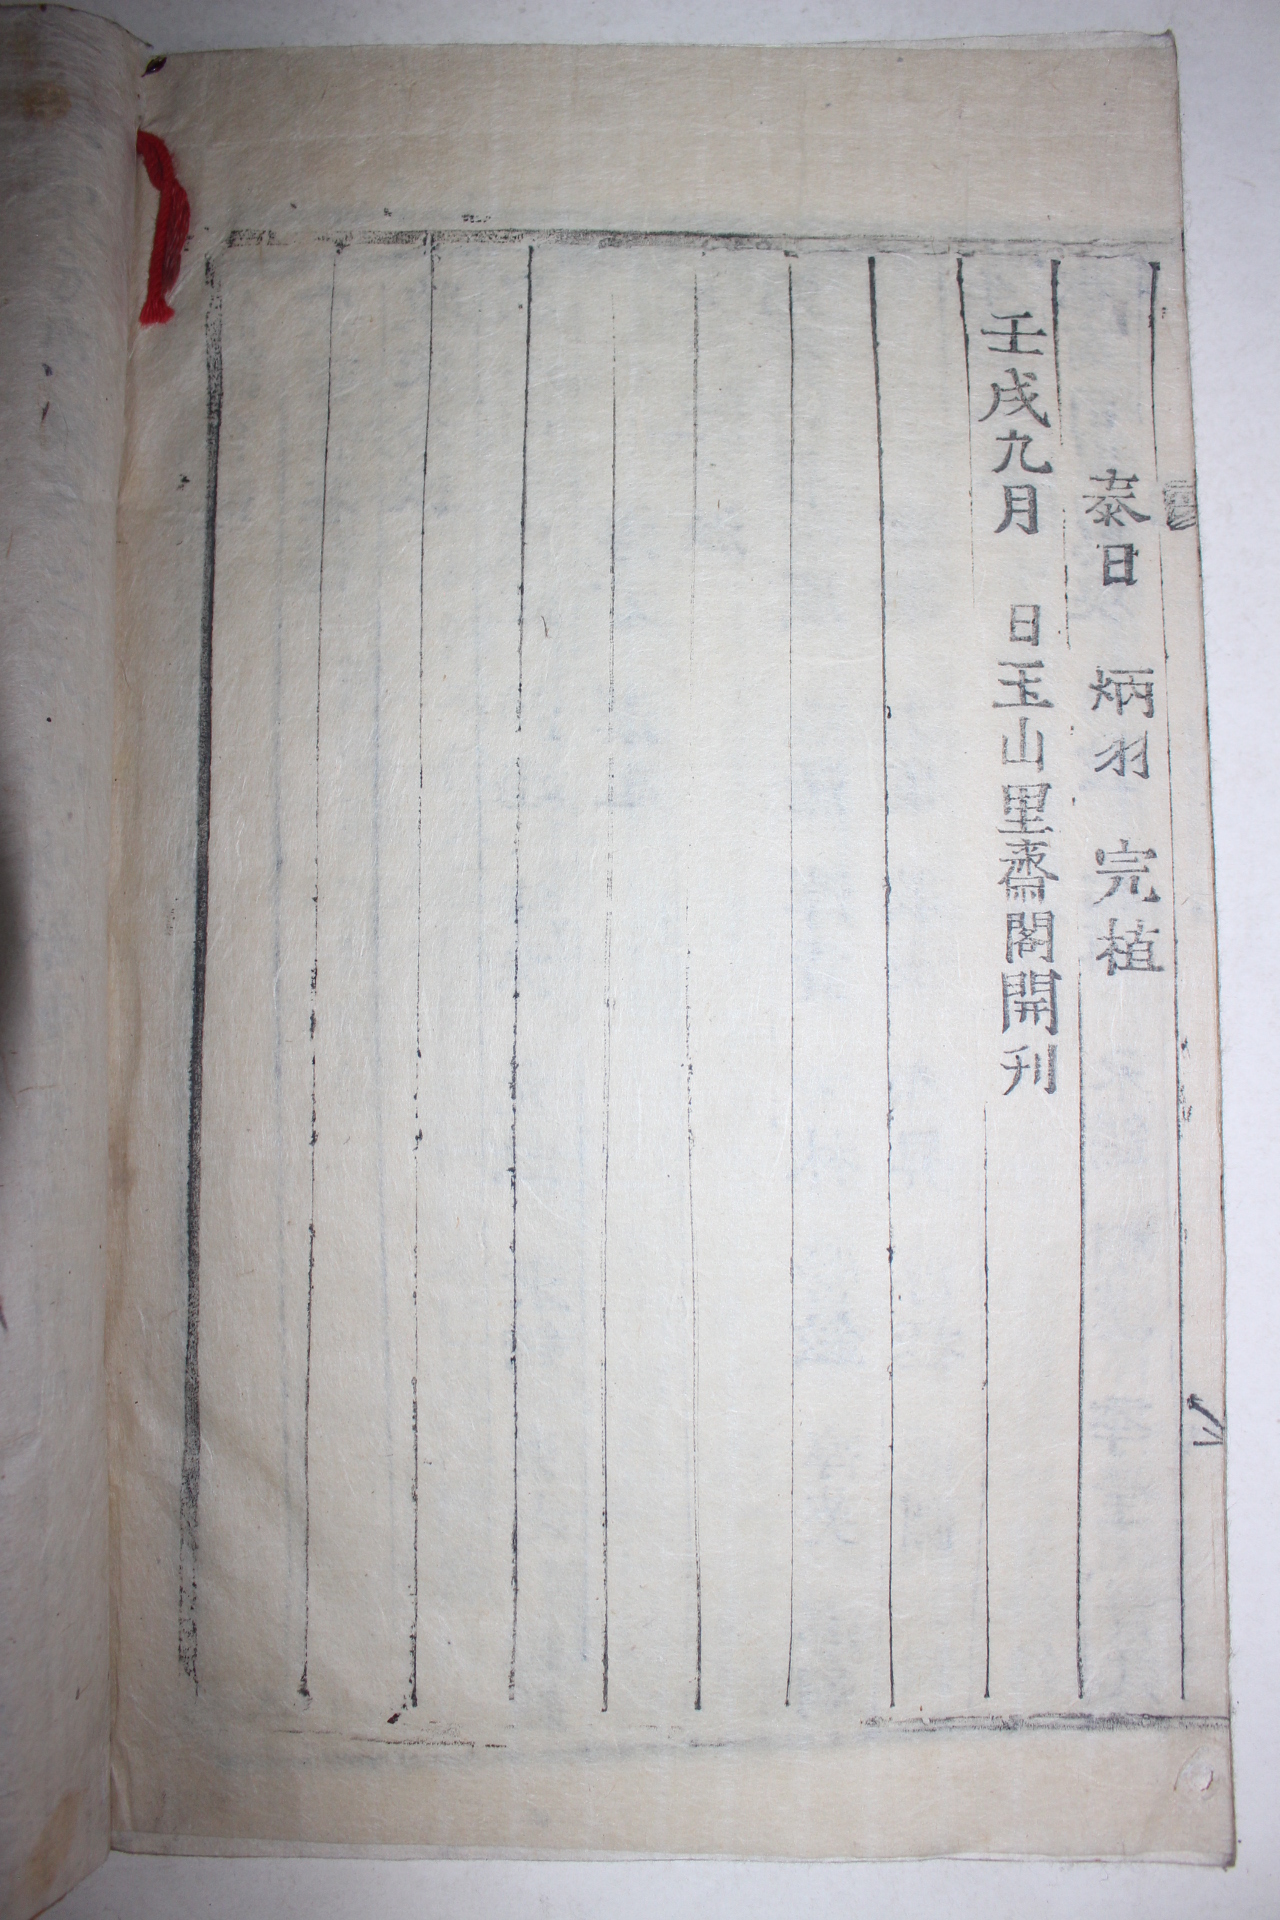 1922년(임술보) 목활자본 전주최씨세보(全州崔氏世譜) 6권6책완질